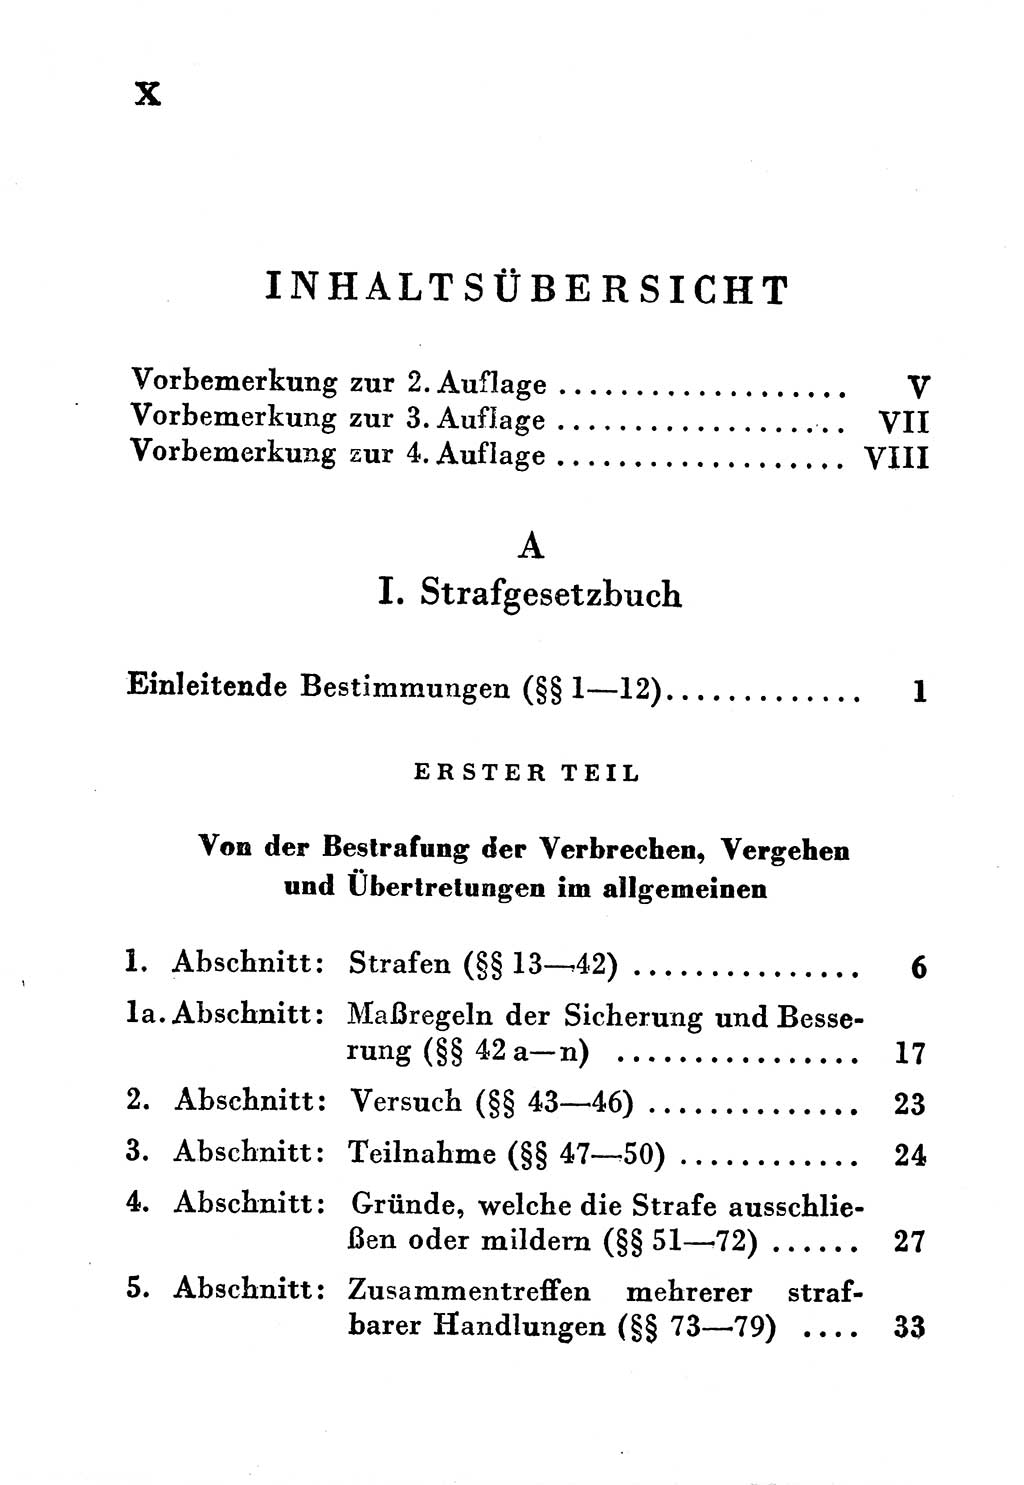 Einleitung Strafgesetzbuch (StGB) und andere Strafgesetze [Deutsche Demokratische Republik (DDR)] 1956, Seite 10 (Einl. StGB Strafges. DDR 1956, S. 10)